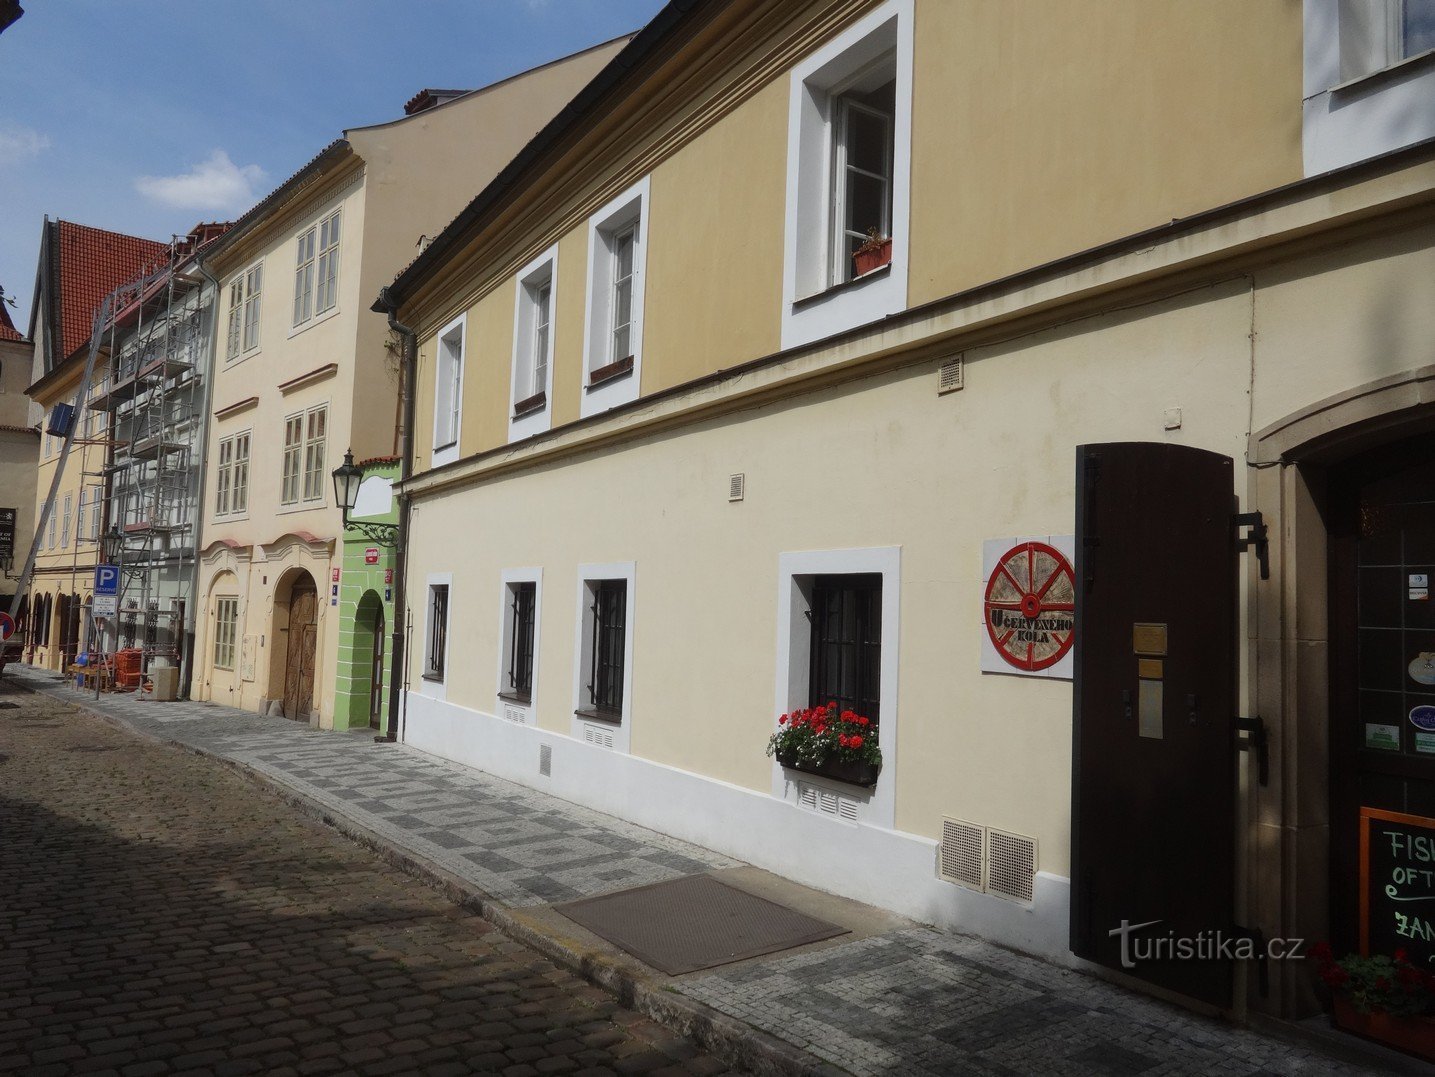 Praga și probabil cea mai îngustă casă din Cehia